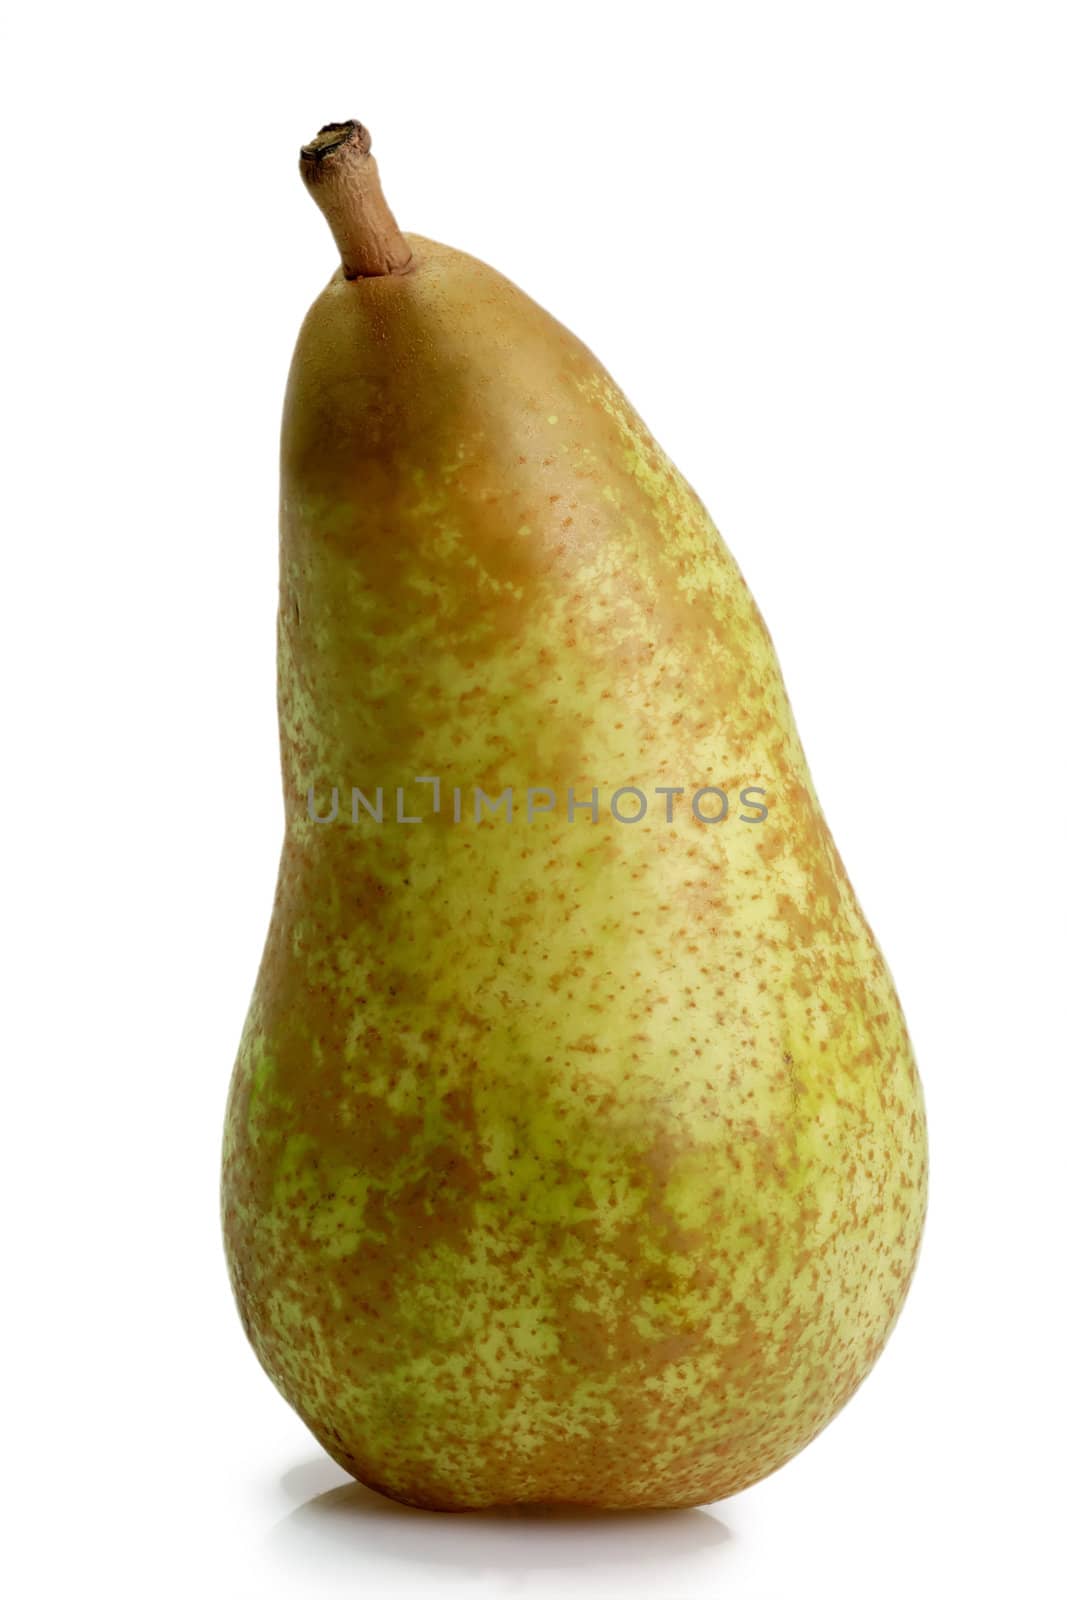 Sweet pear by Teamarbeit